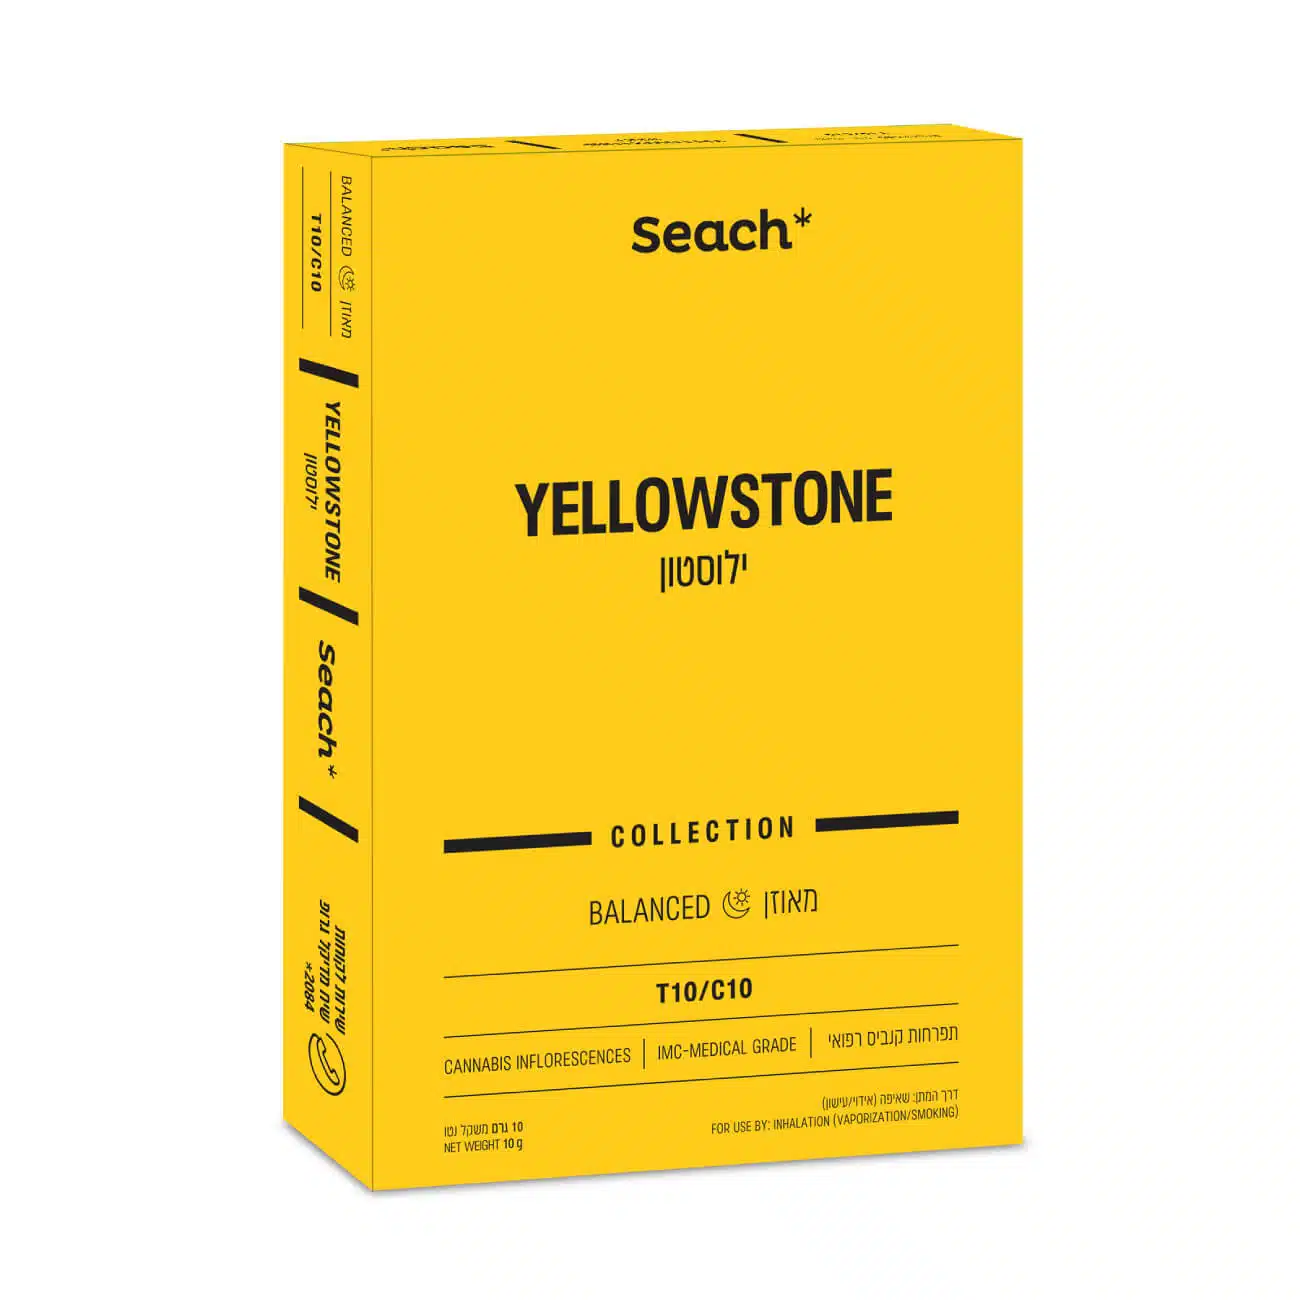 ילוסטון (yellowstone) היבריד t10/c10